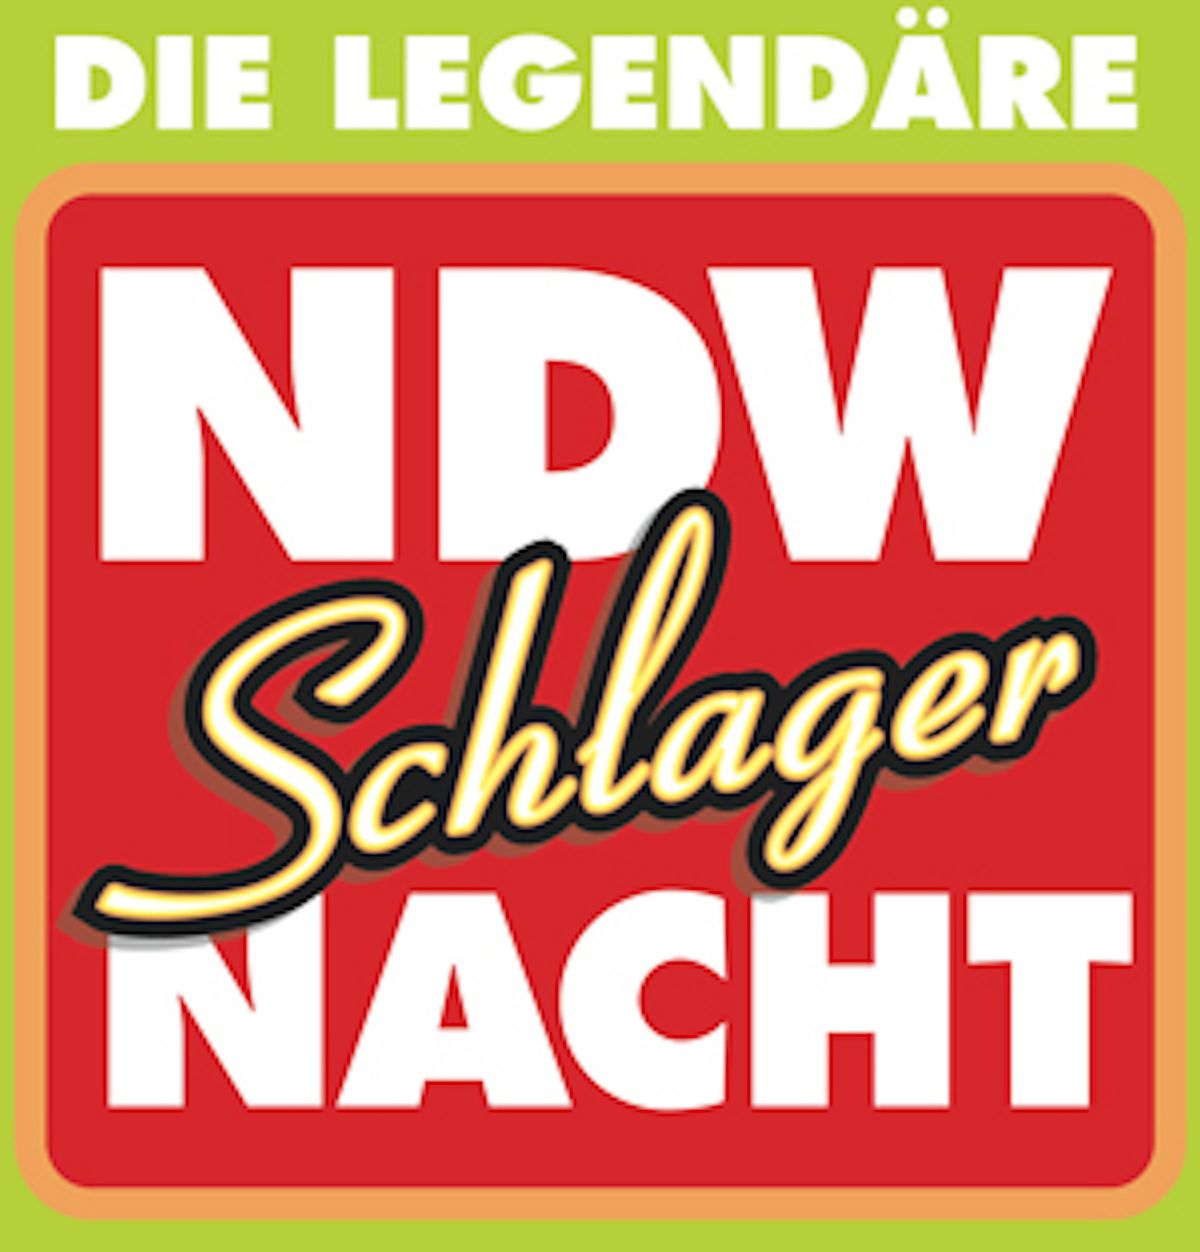 Die legend\u00e4re NDW & Deutsche Schlagernacht 